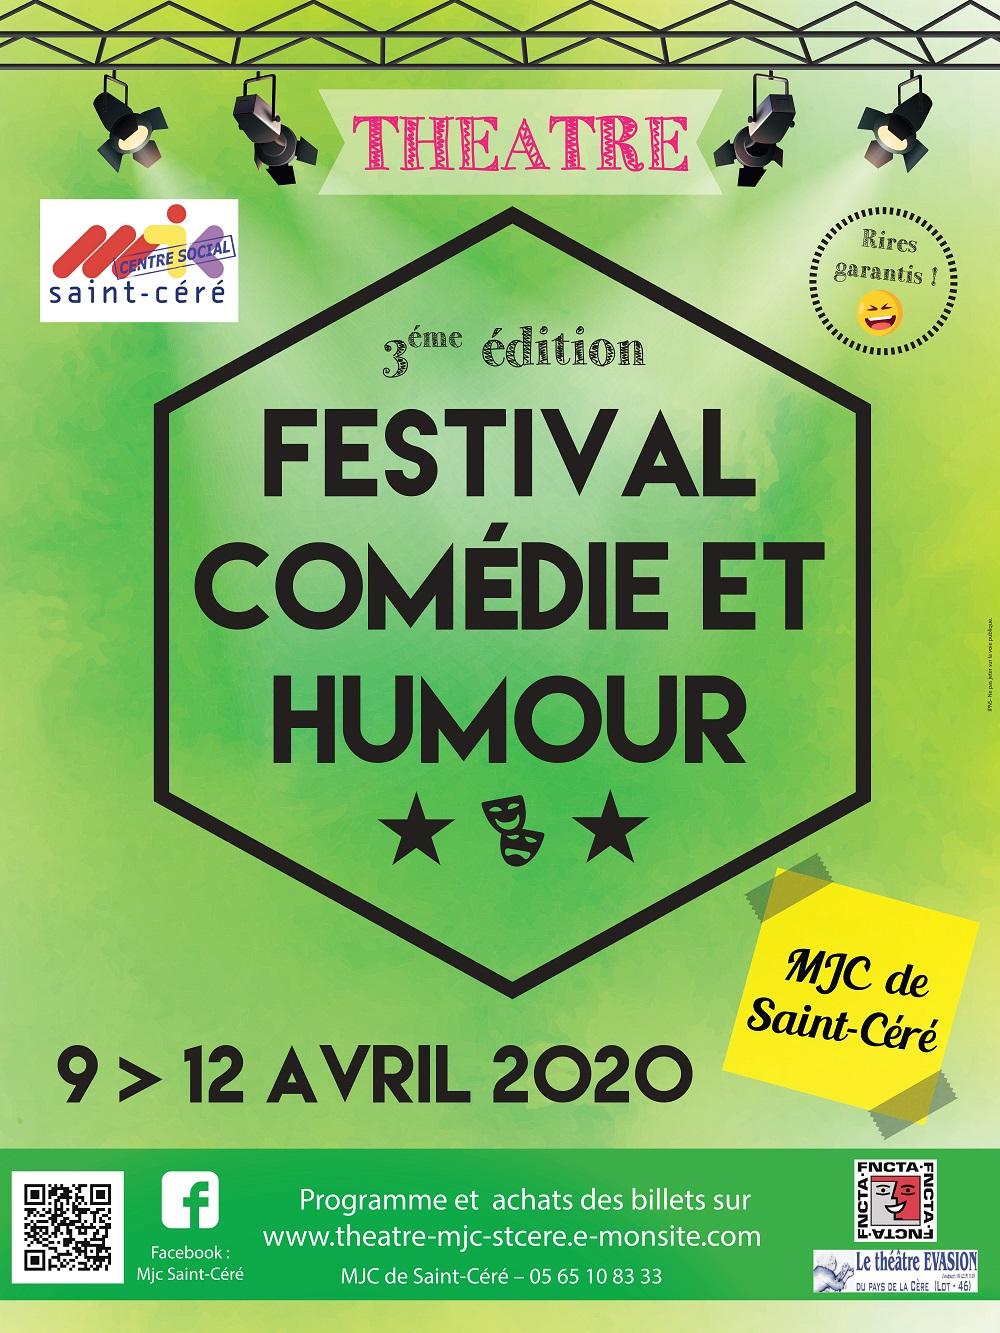 Festival comedie et humour 2020 affiche petite taille